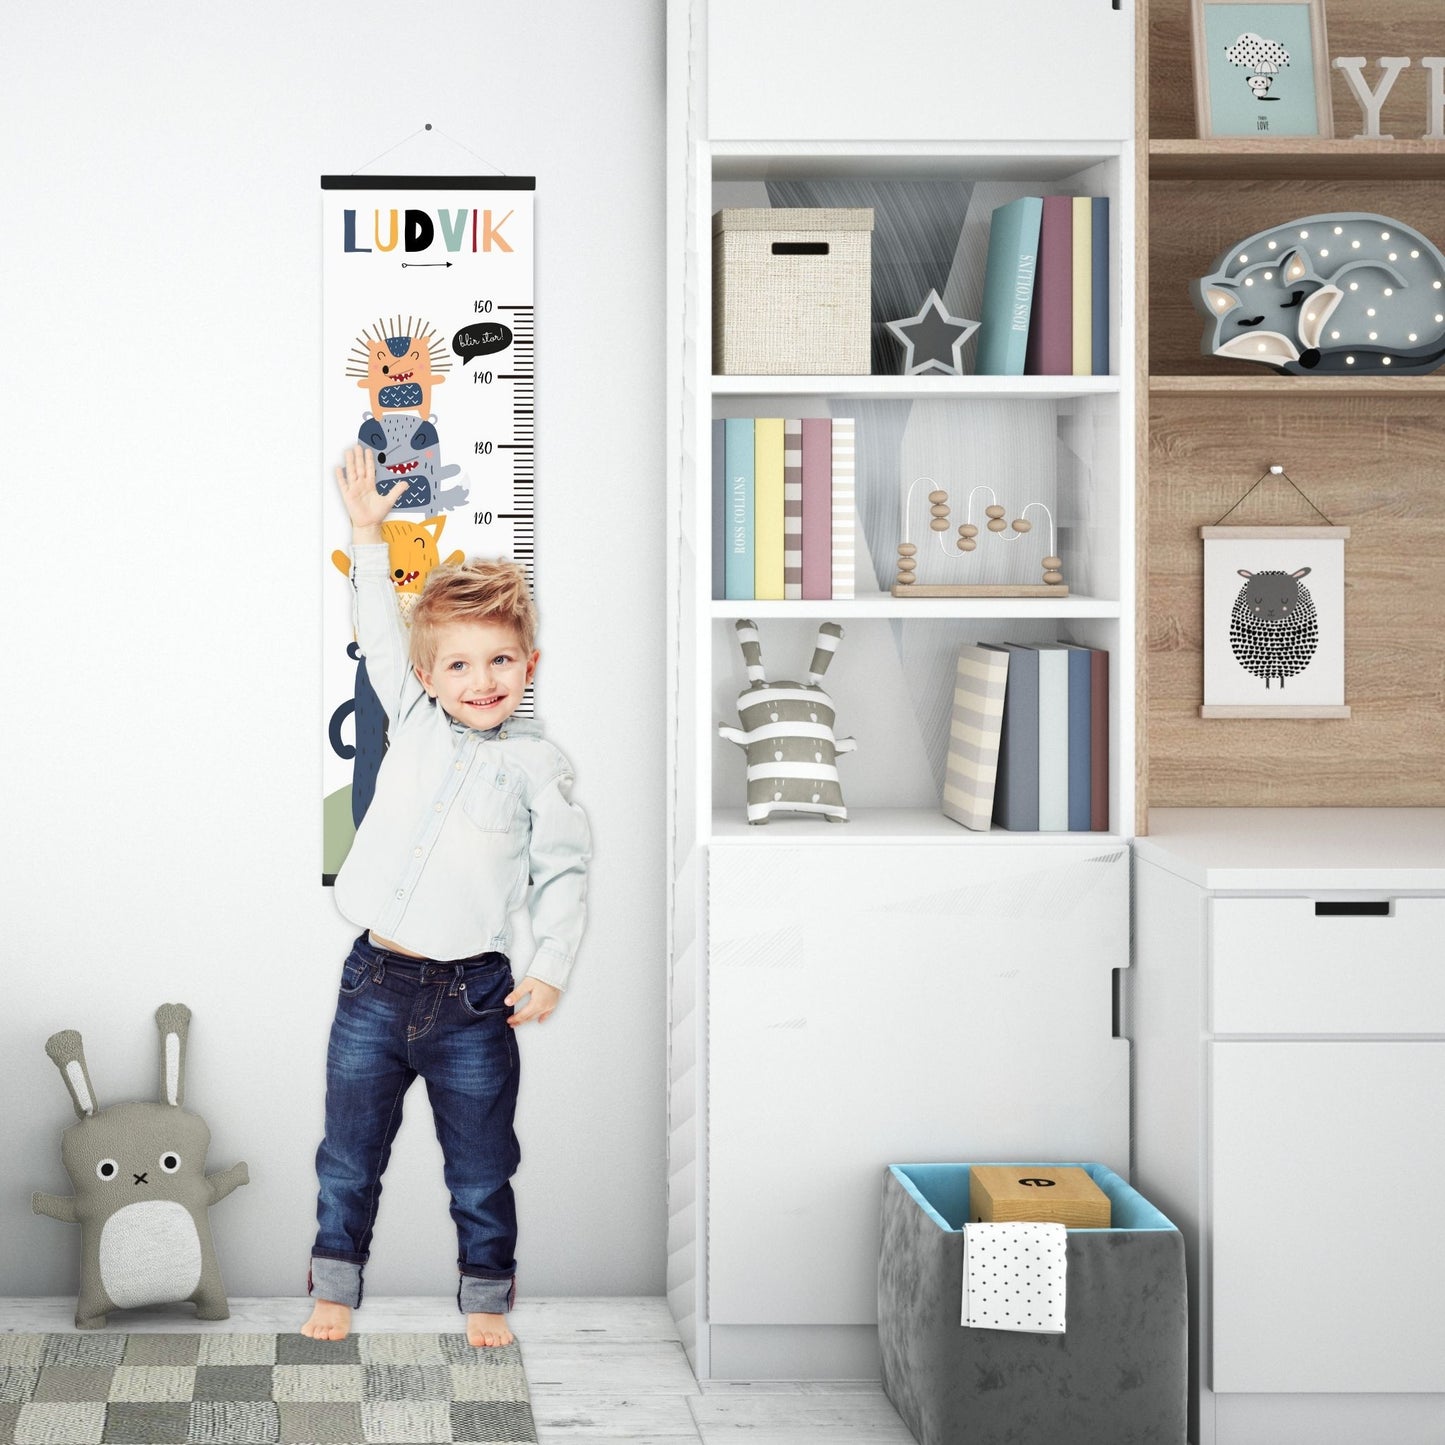  Dekorativ plakat med høydemåler med søte dyrefigurer på hvit bakgrunn. Illustrasjon som viser høydemåler henger på en vegg og en gutt som måler seg.